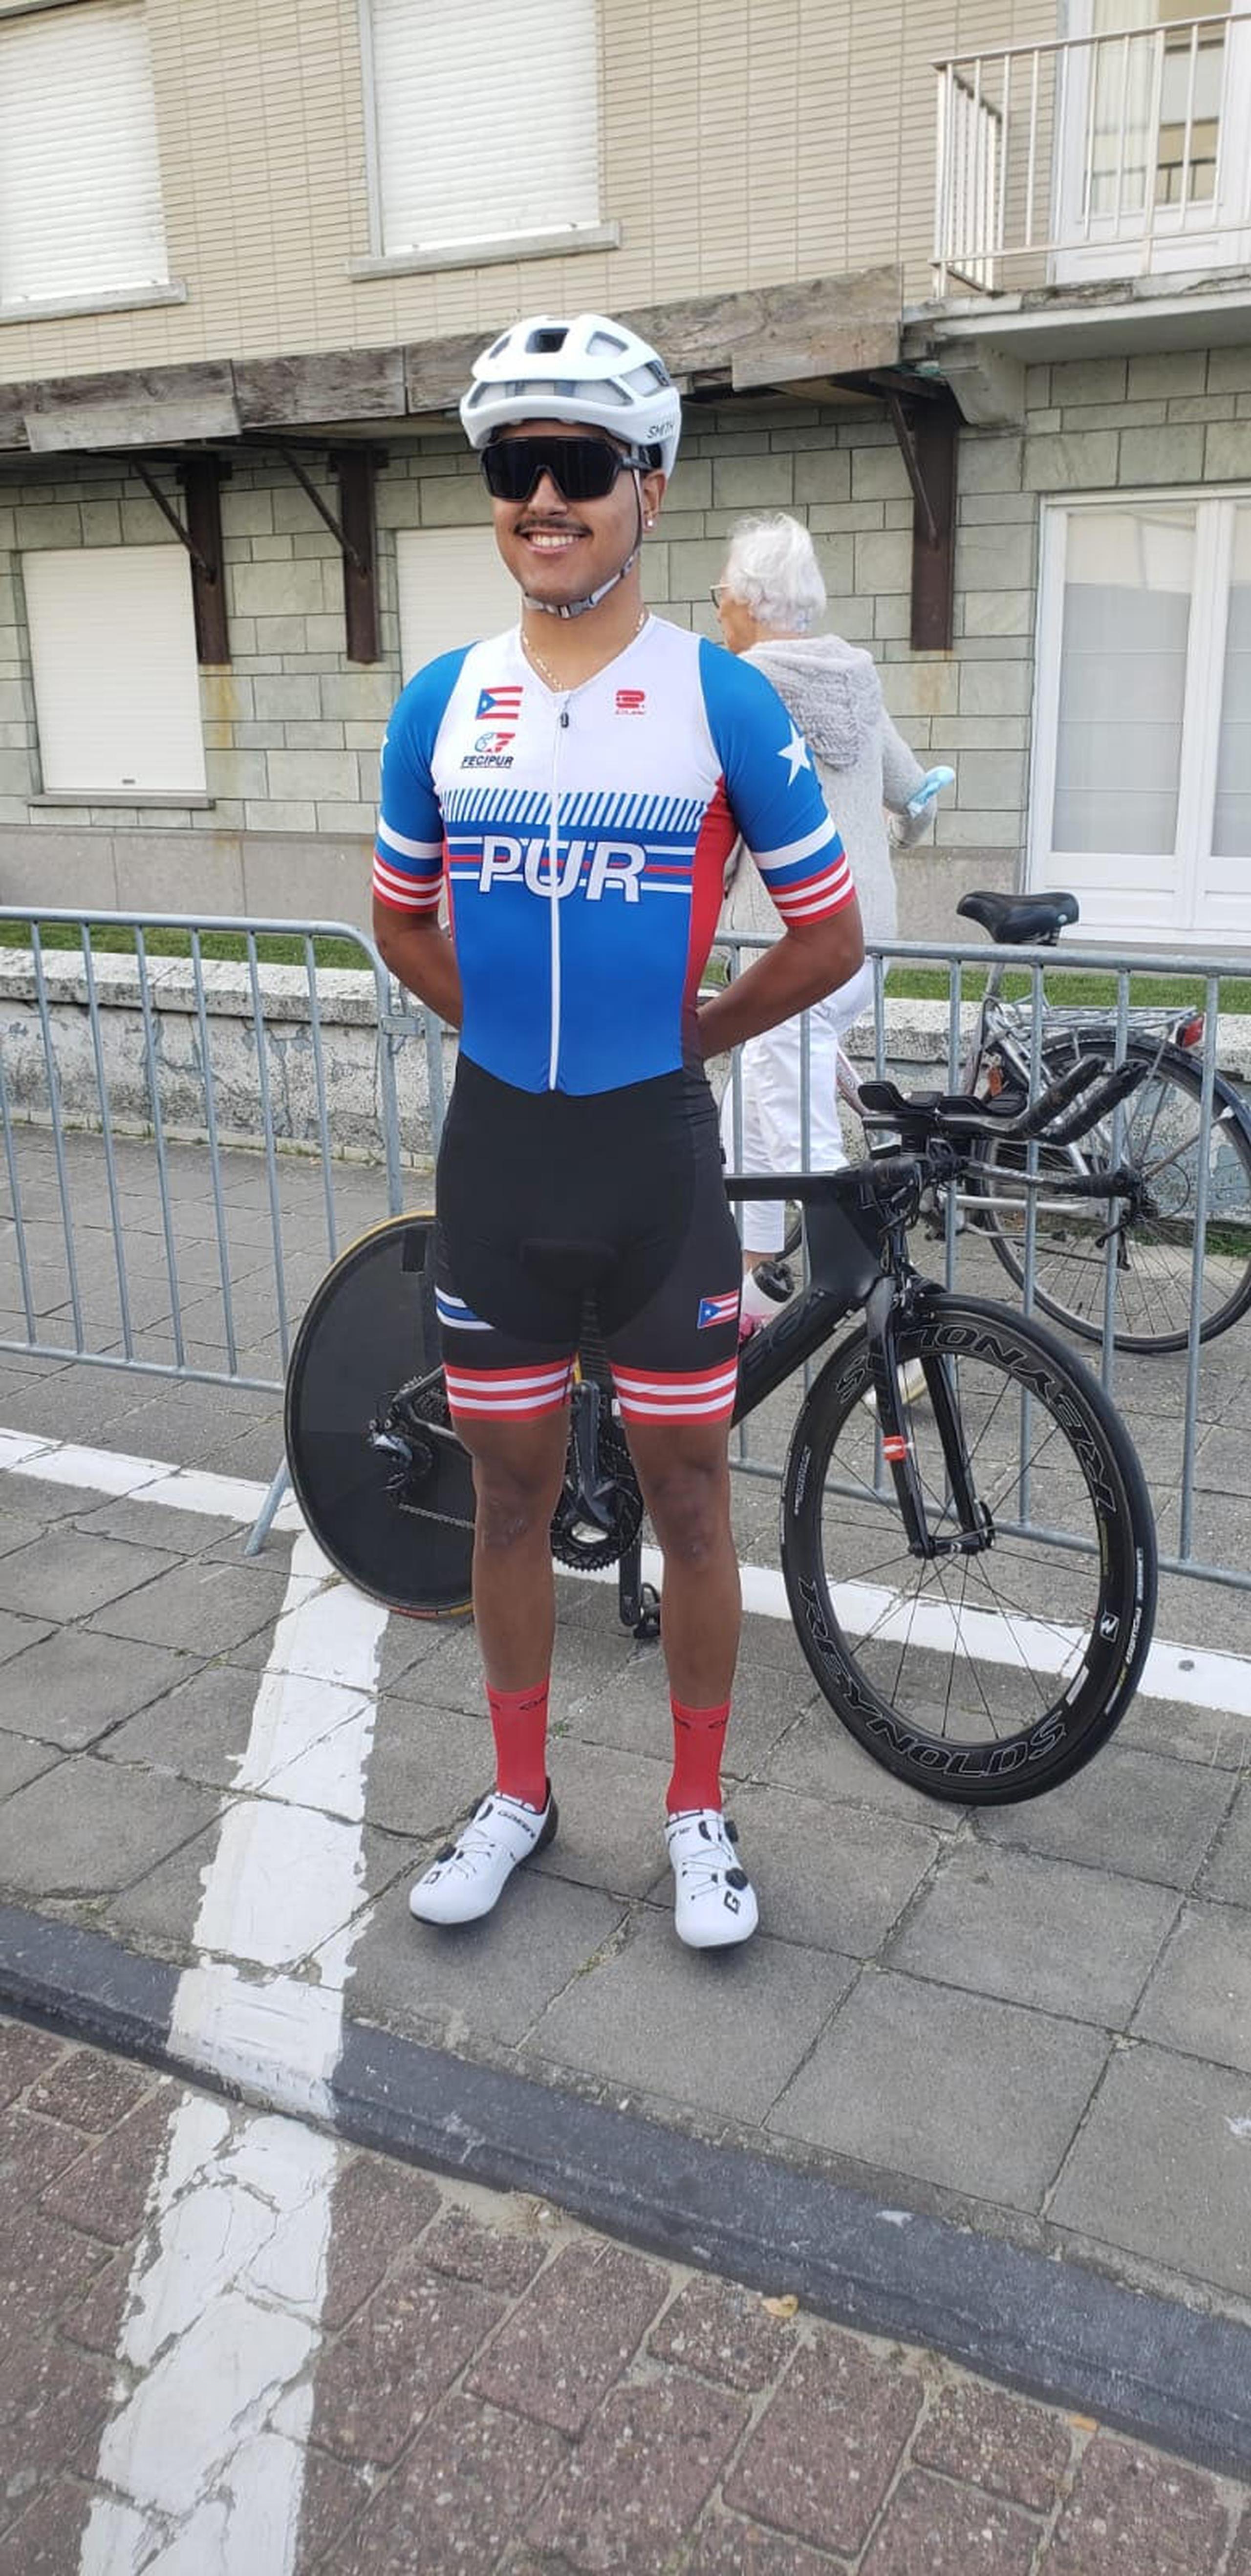 El puertorriqueño Derex Segarra actualmente participa del Campeonato mundial de Ciclismo de Ruta que se celebra en Flandes, Bélgica.